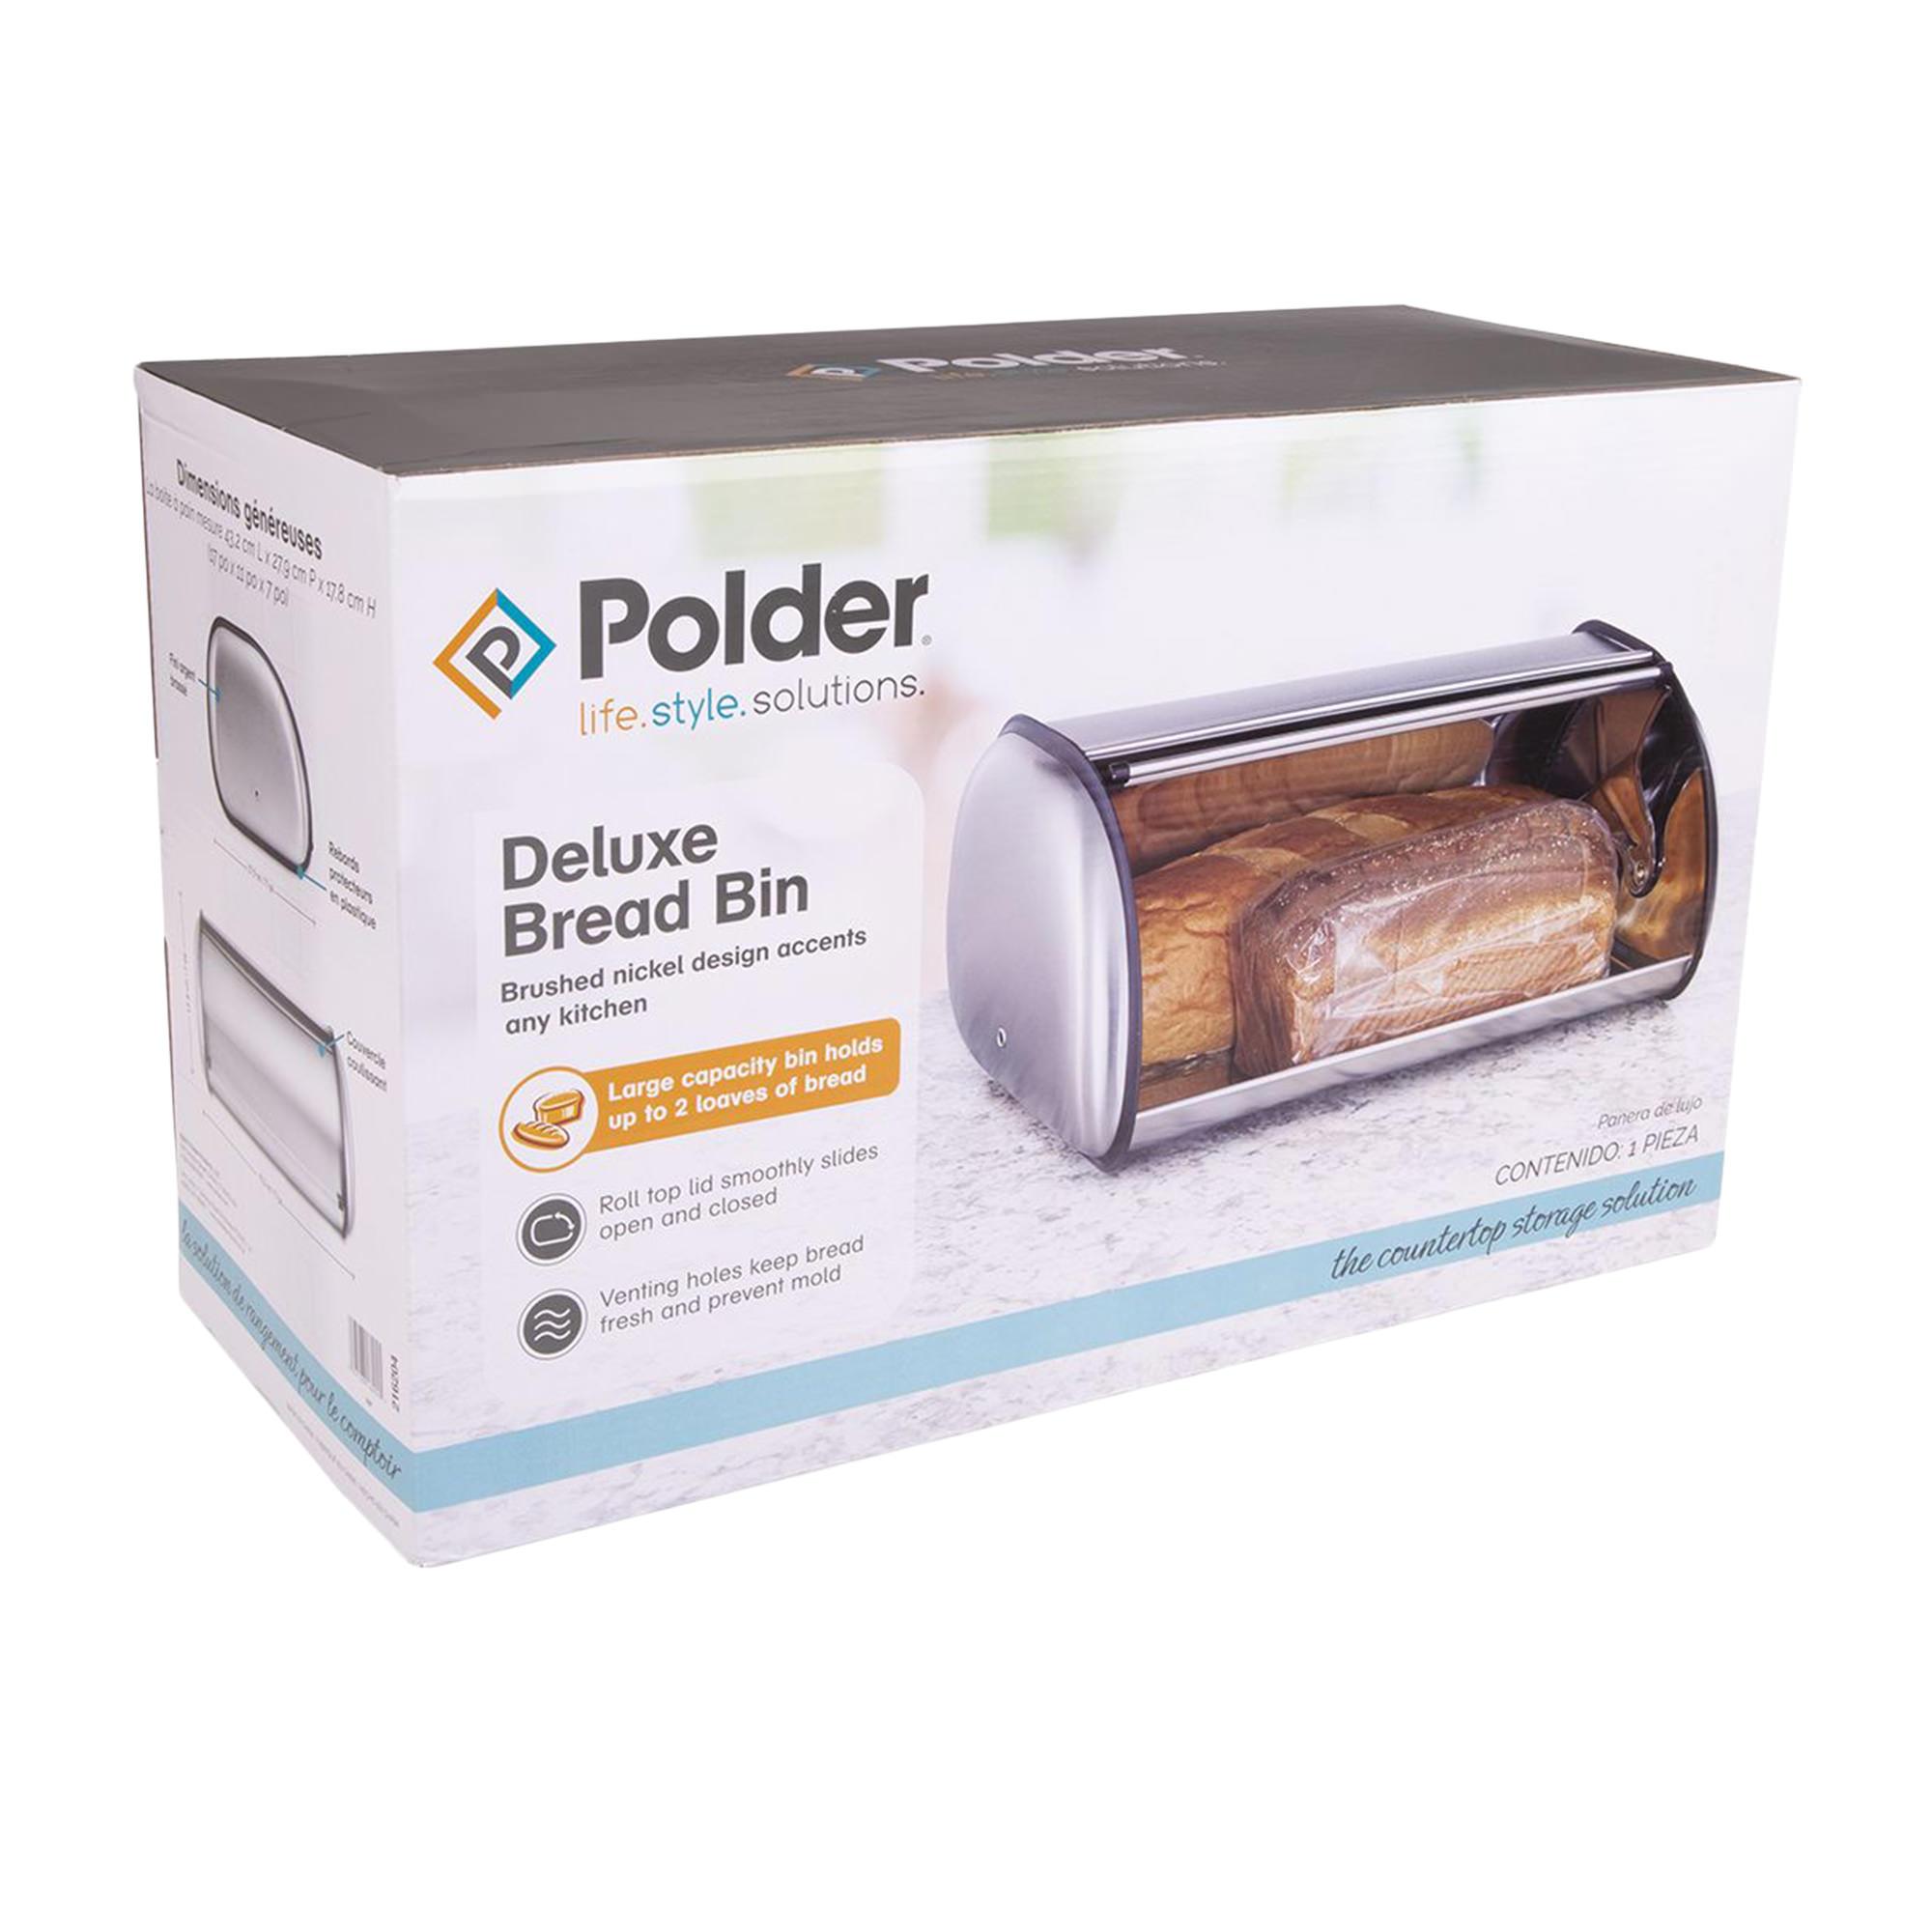 Polder Deluxe Roll Top Bread Bin Nickel Image 5